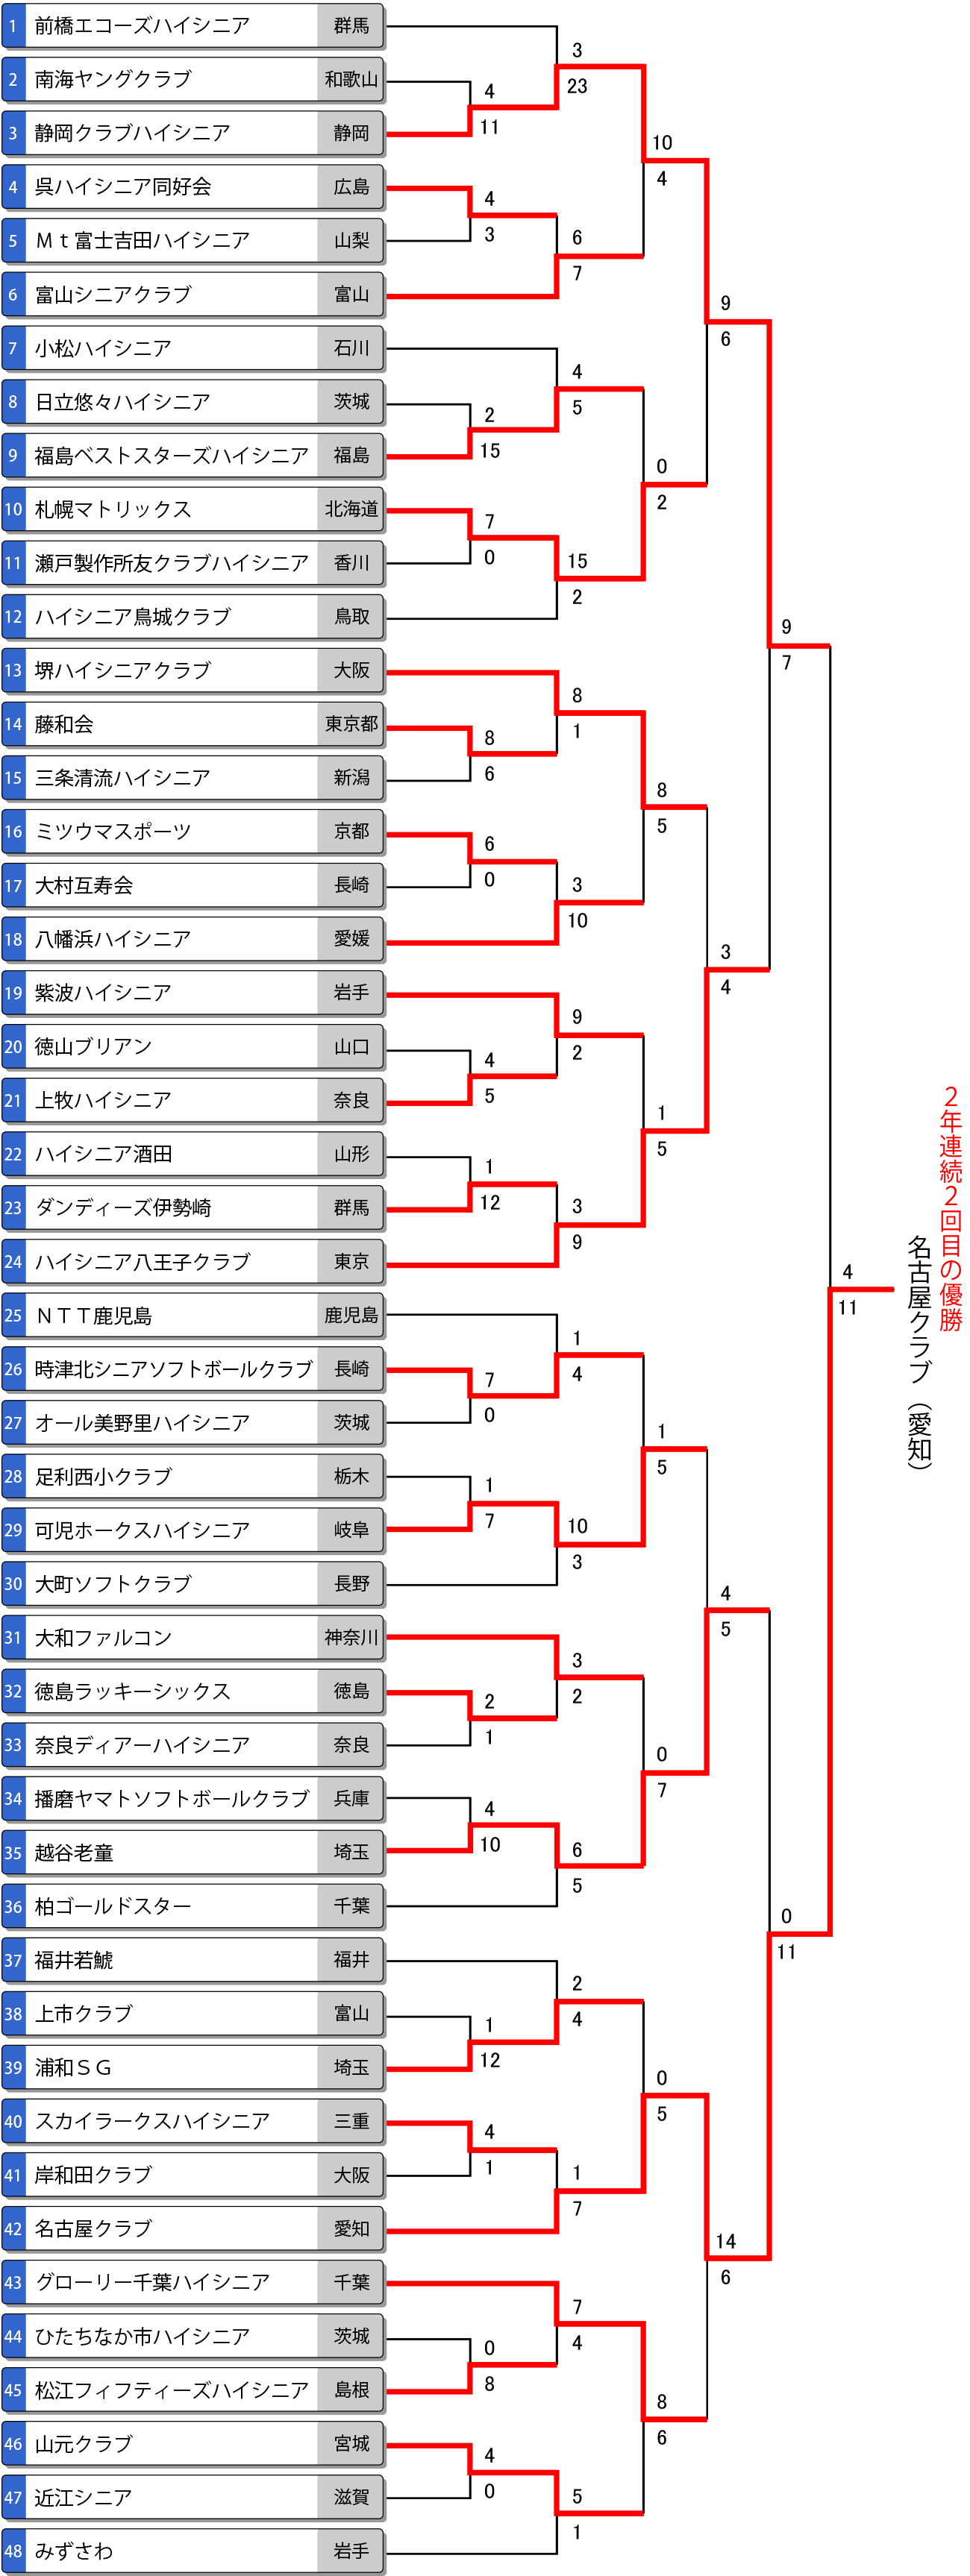 第18回全日本ハイシニア大会トーナメント表